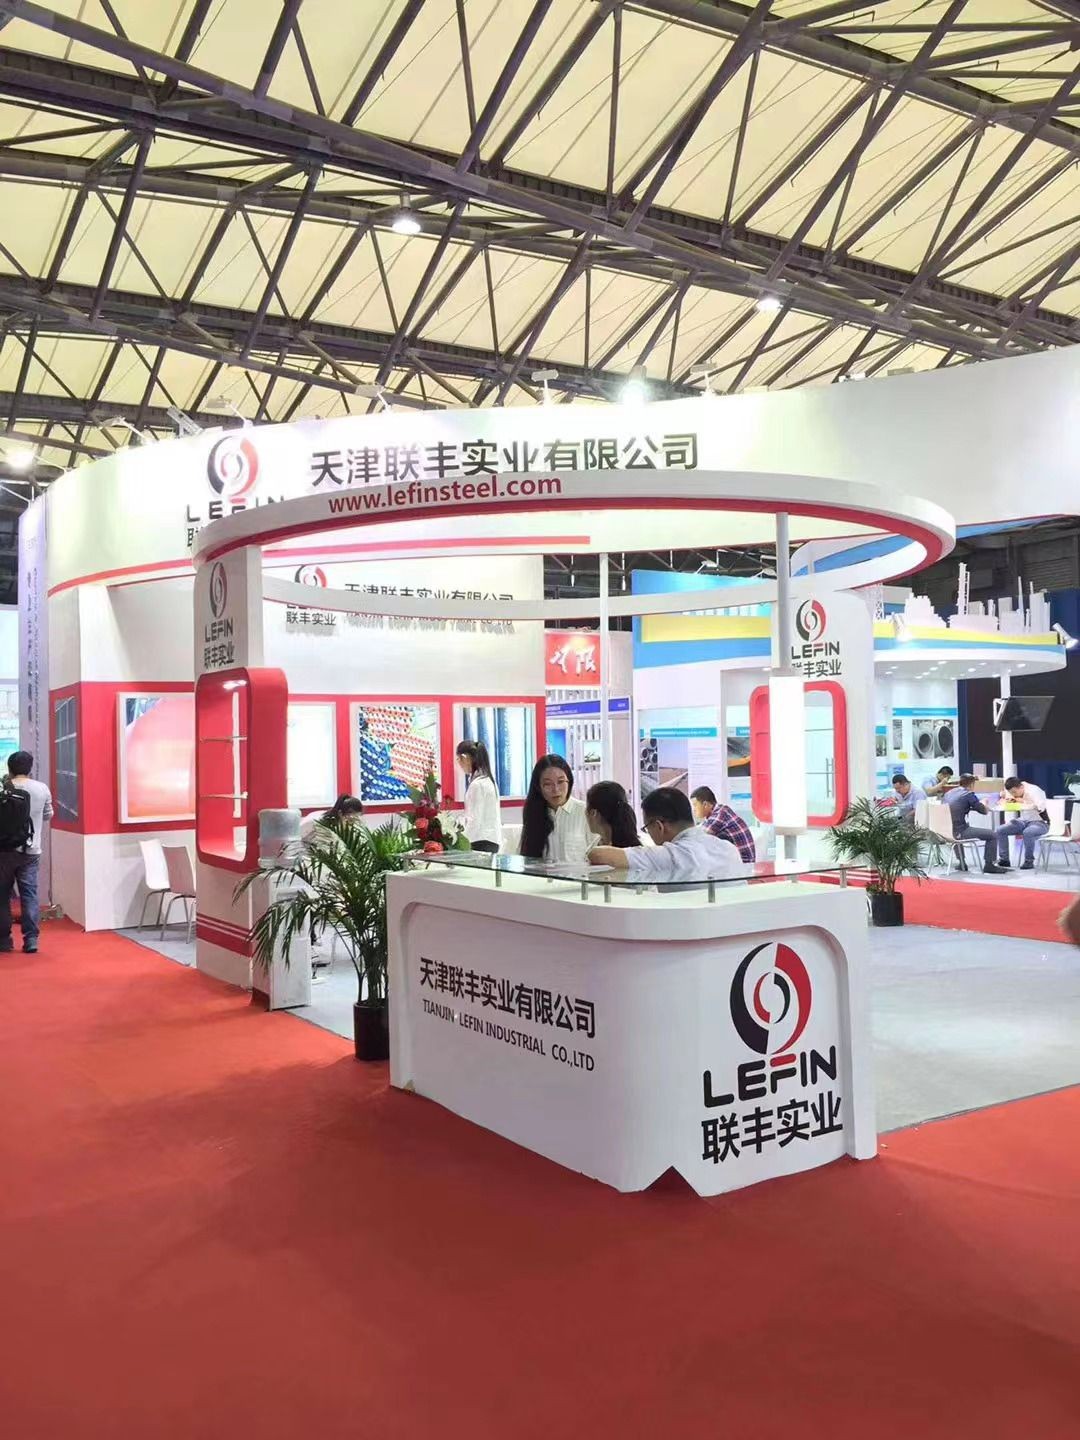 Tianjin LEFIN Industrial co.,Ltd